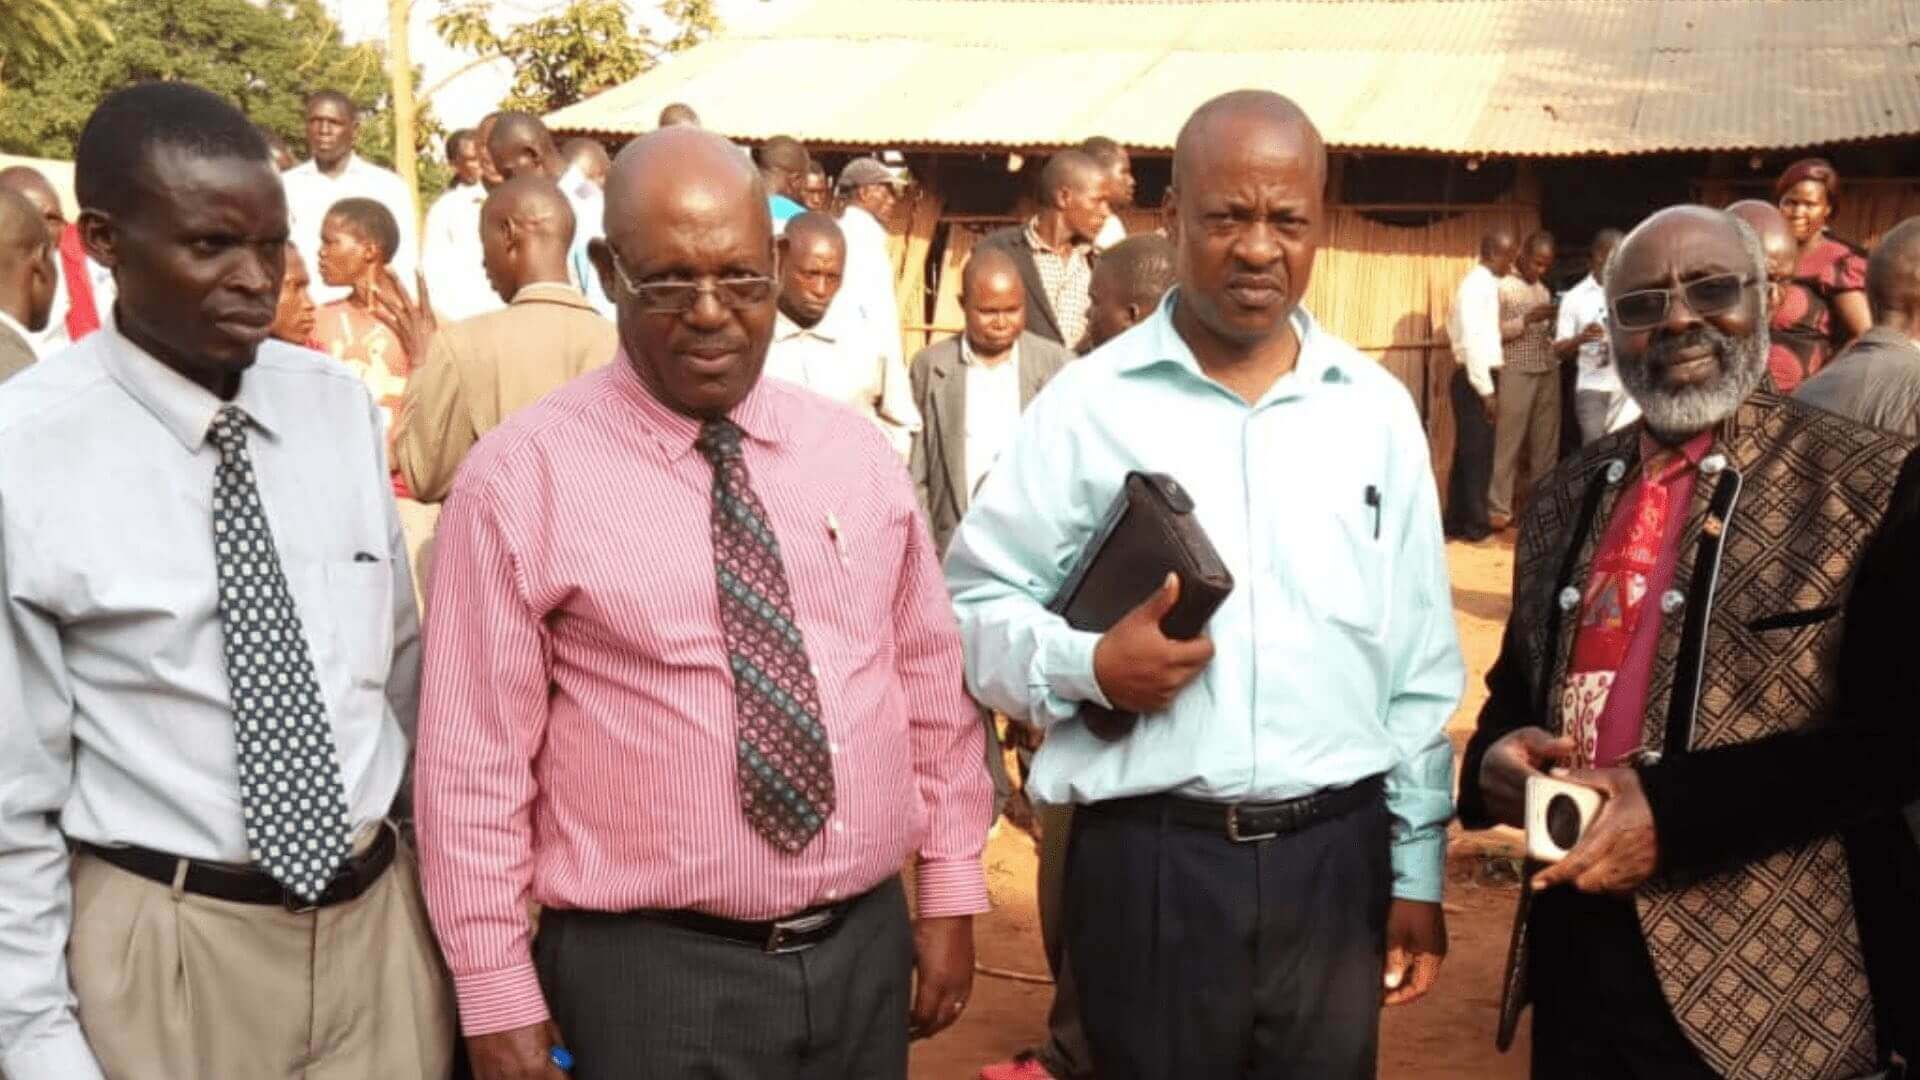 Uganda: Baptist Ministers Line up for Re-Baptism